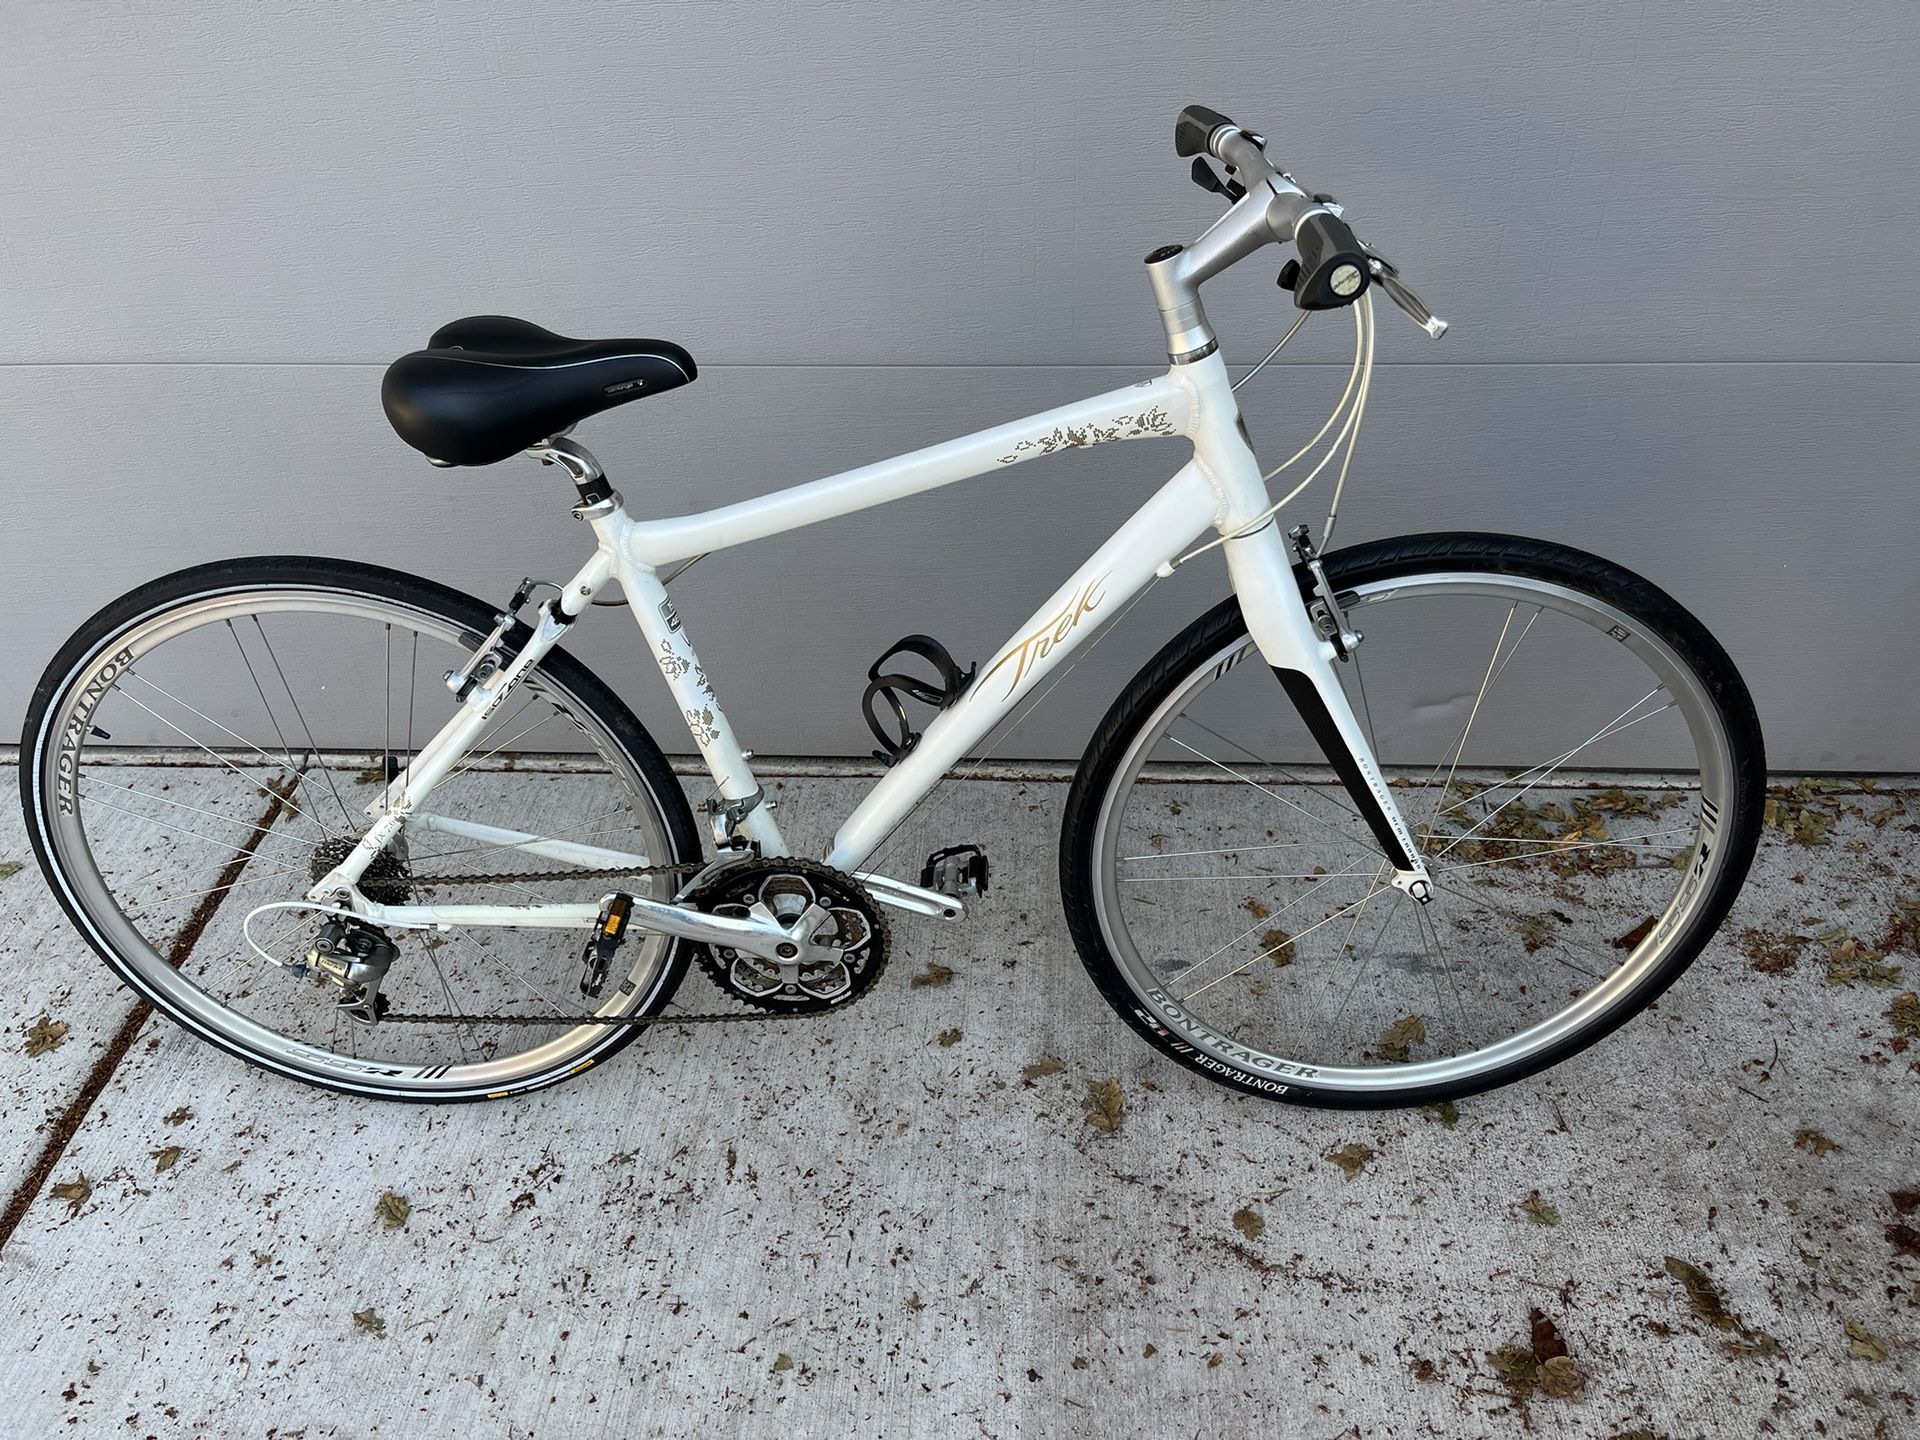 19” Frame Trek FX 7.6 Hybrid Bike